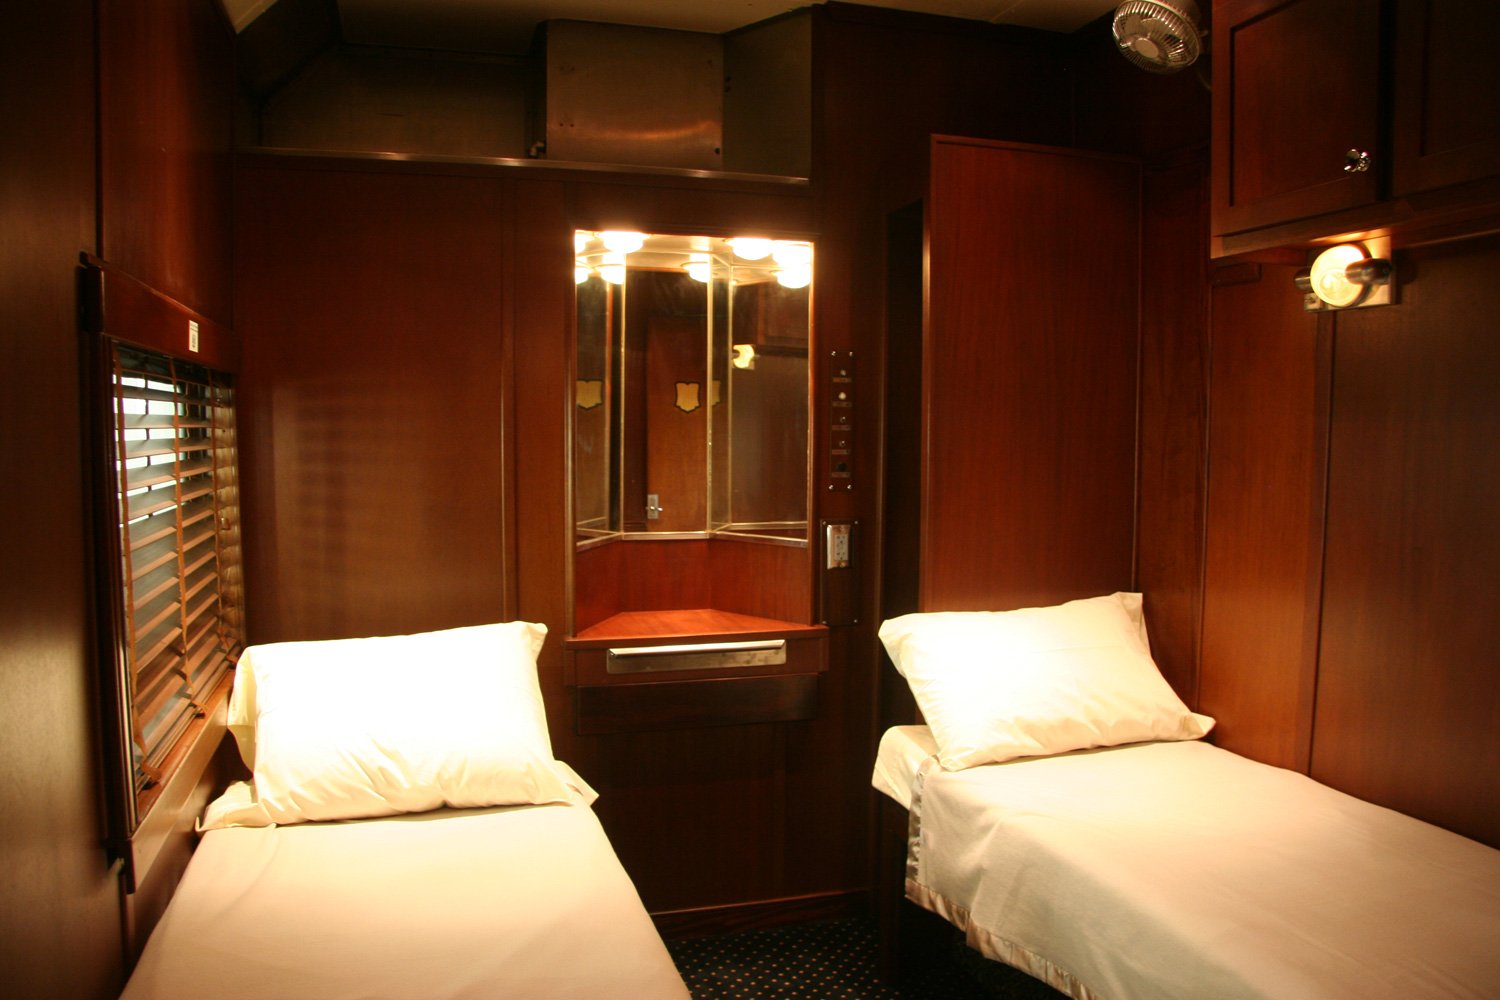 спальня в стиле купе поезда